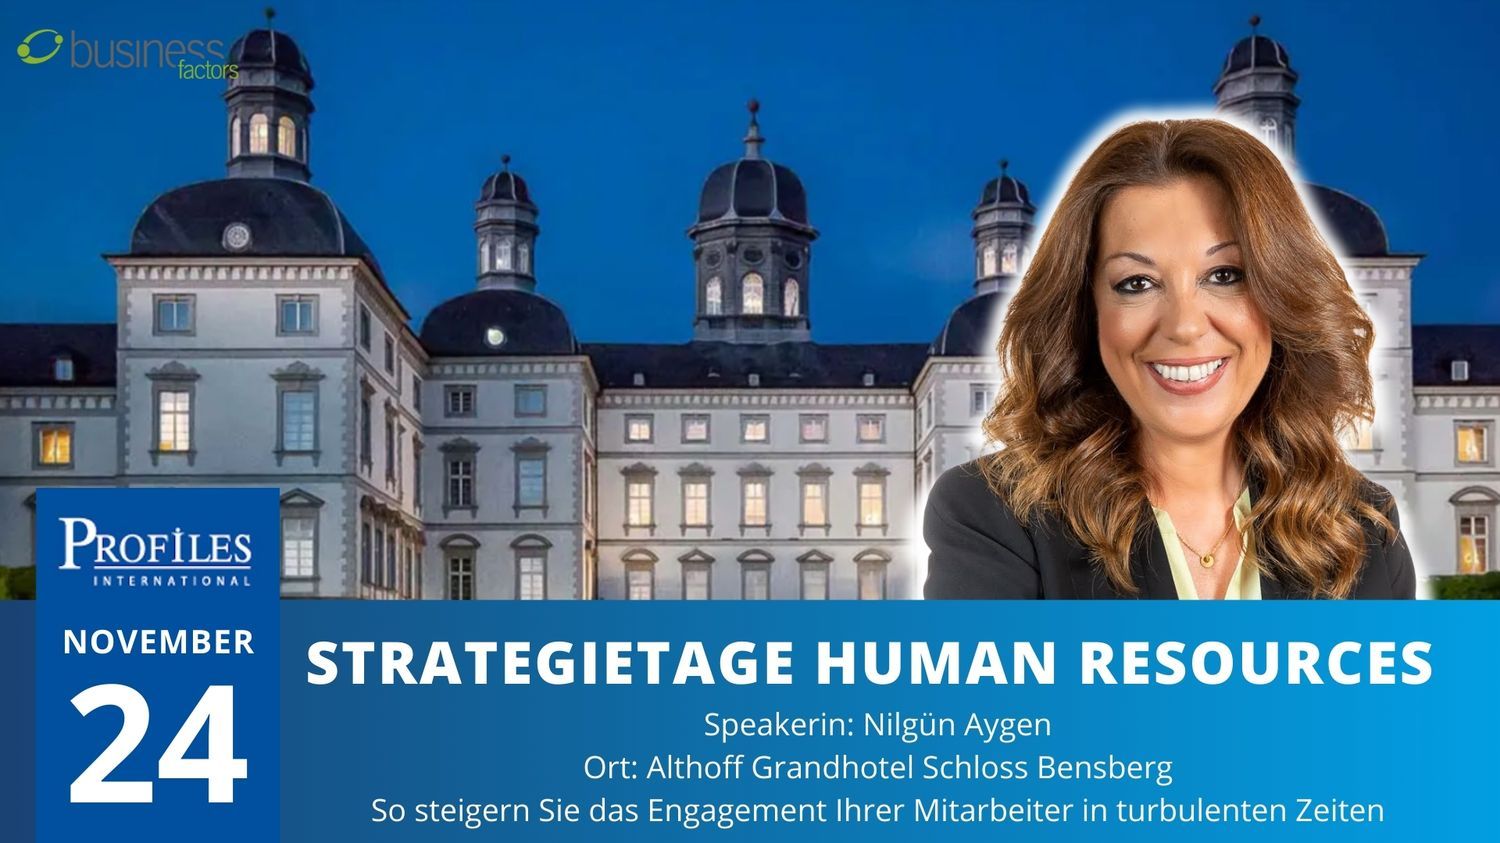  Bei der HR StrategieTage | @Businessfactors-Veranstaltung im Grand Schloß Bensberg am 24. November werde ich über neue Ansätze im Mitarbeiter-Engagement sprechen.